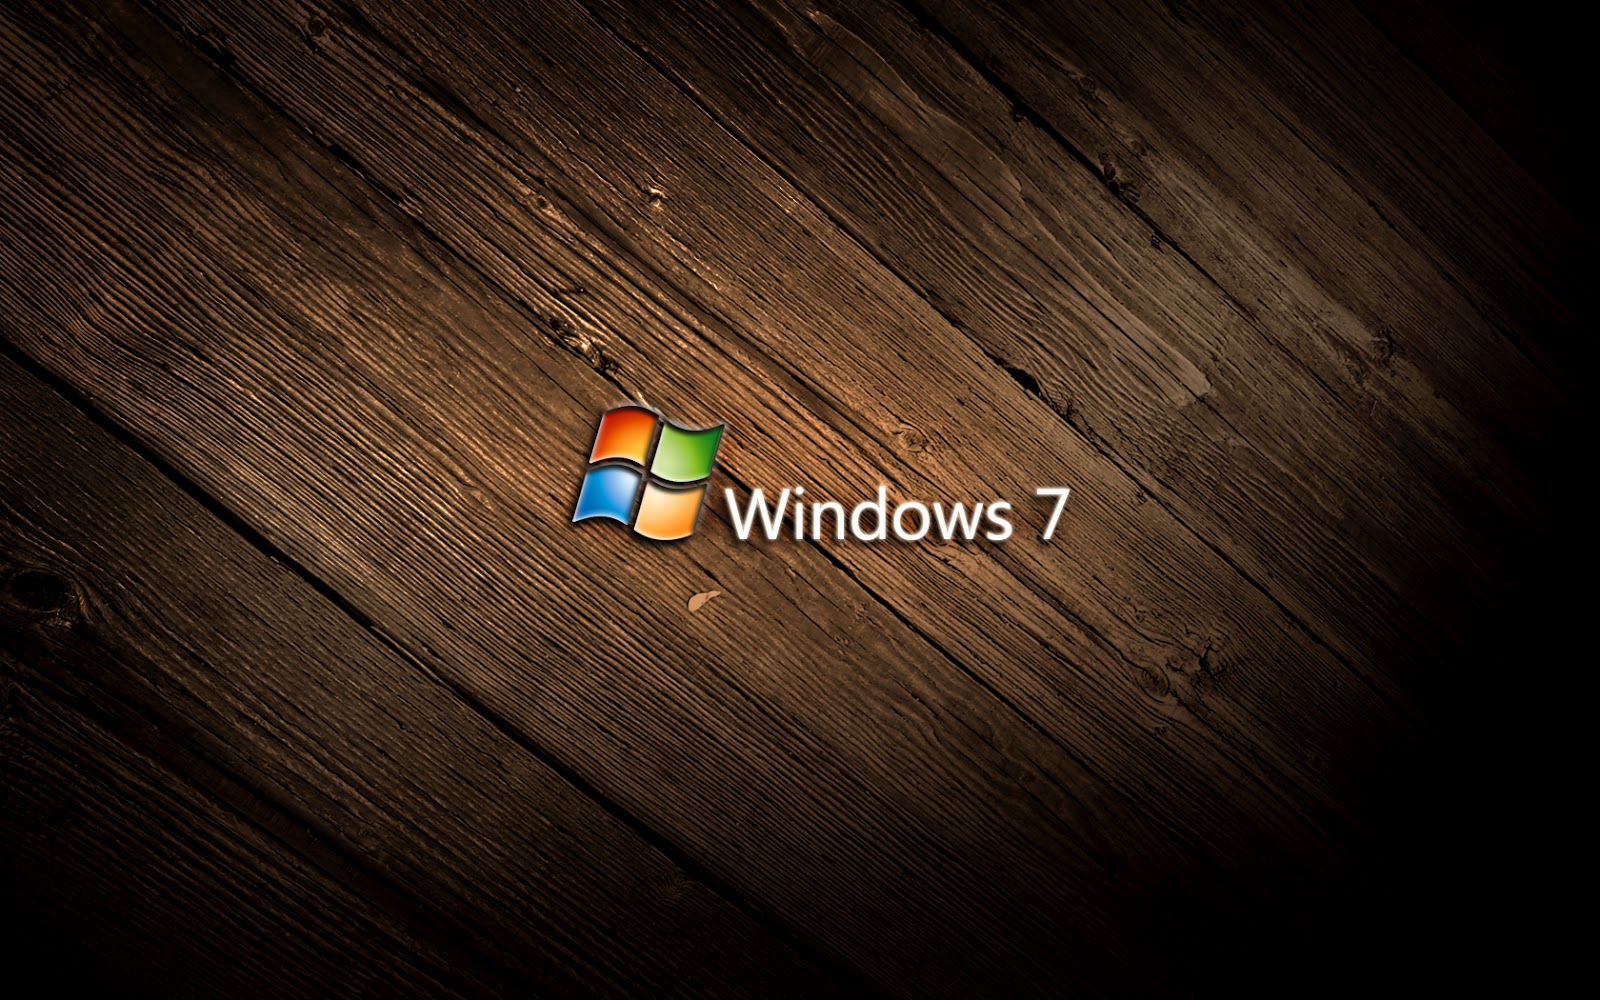 Tải miễn phí nhãn hình nền Windows 7 HD ngay để sở hữu cho mình những bức ảnh vô cùng độc đáo và đẹp mắt. Với bộ sưu tập này, bạn có thể dễ dàng sắp xếp và chọn lựa những hình ảnh yêu thích nhất và sử dụng chúng làm hình nền. Sản phẩm này thật sự tuyệt vời và đáng để thử qua!